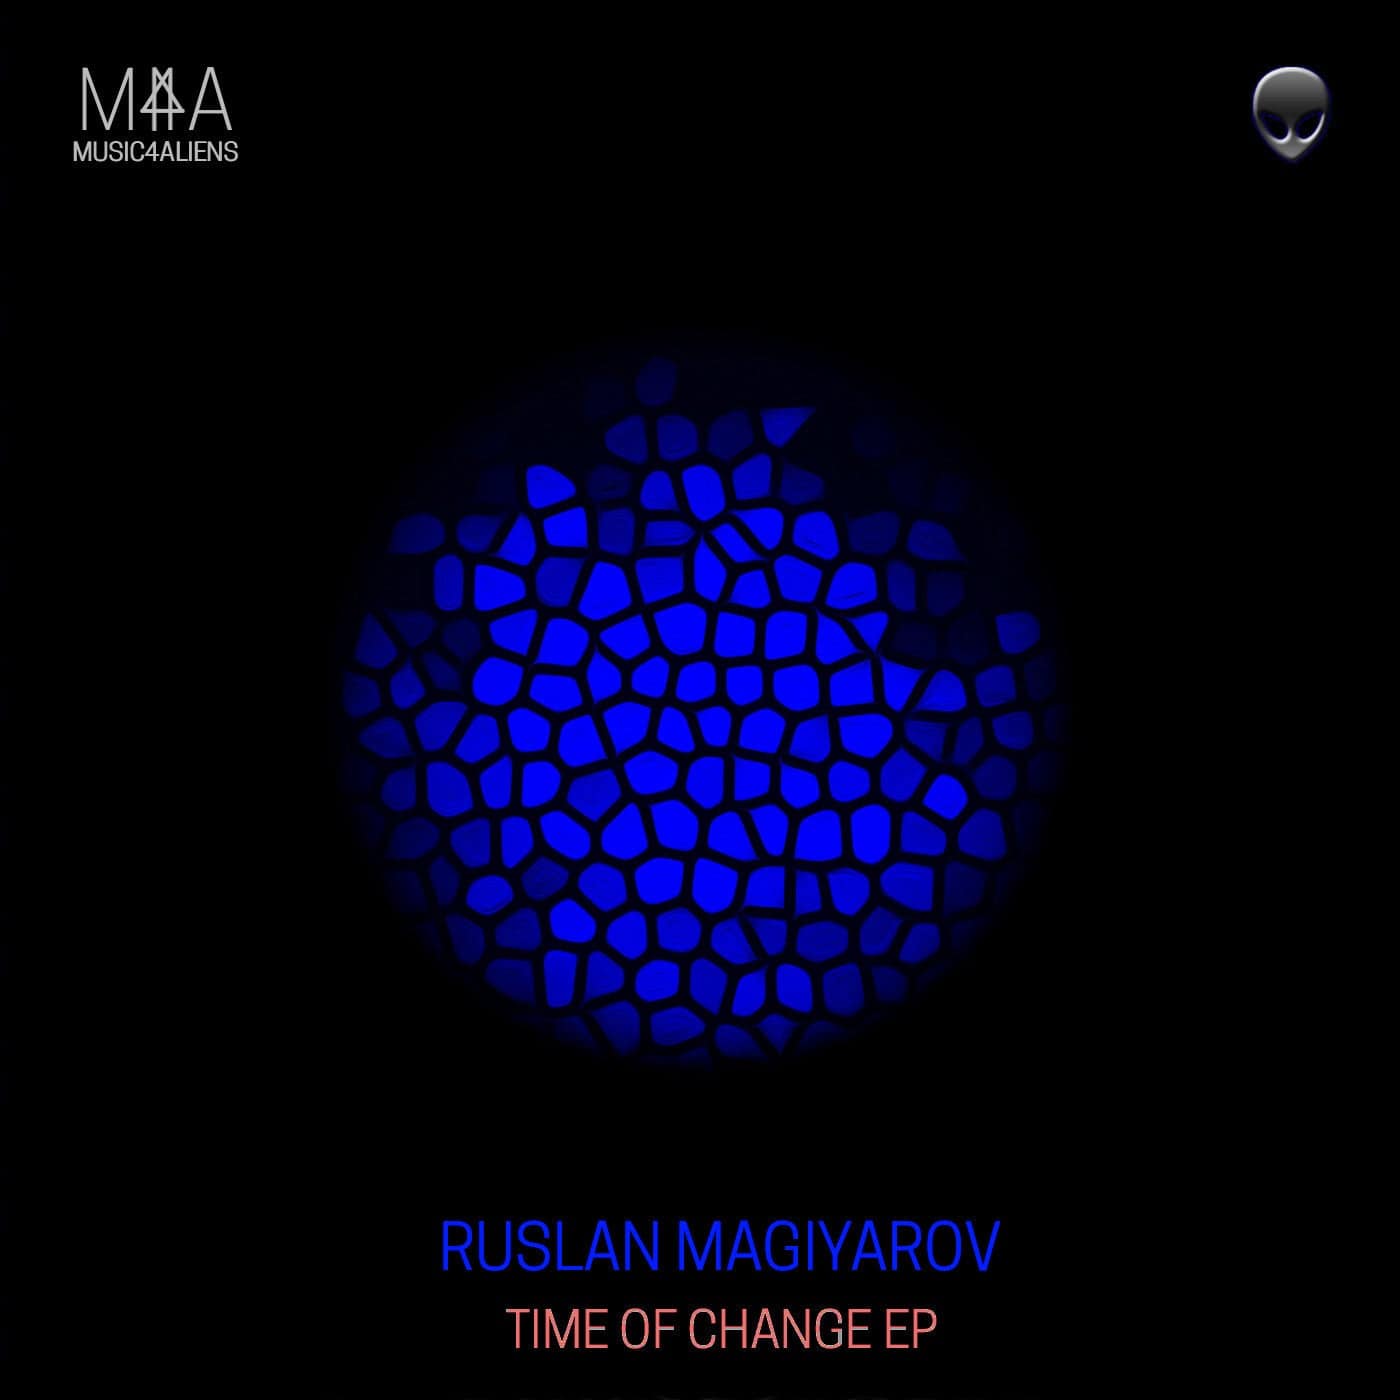 image cover: Ruslan Magiyarov - Time of change EP / M4A078